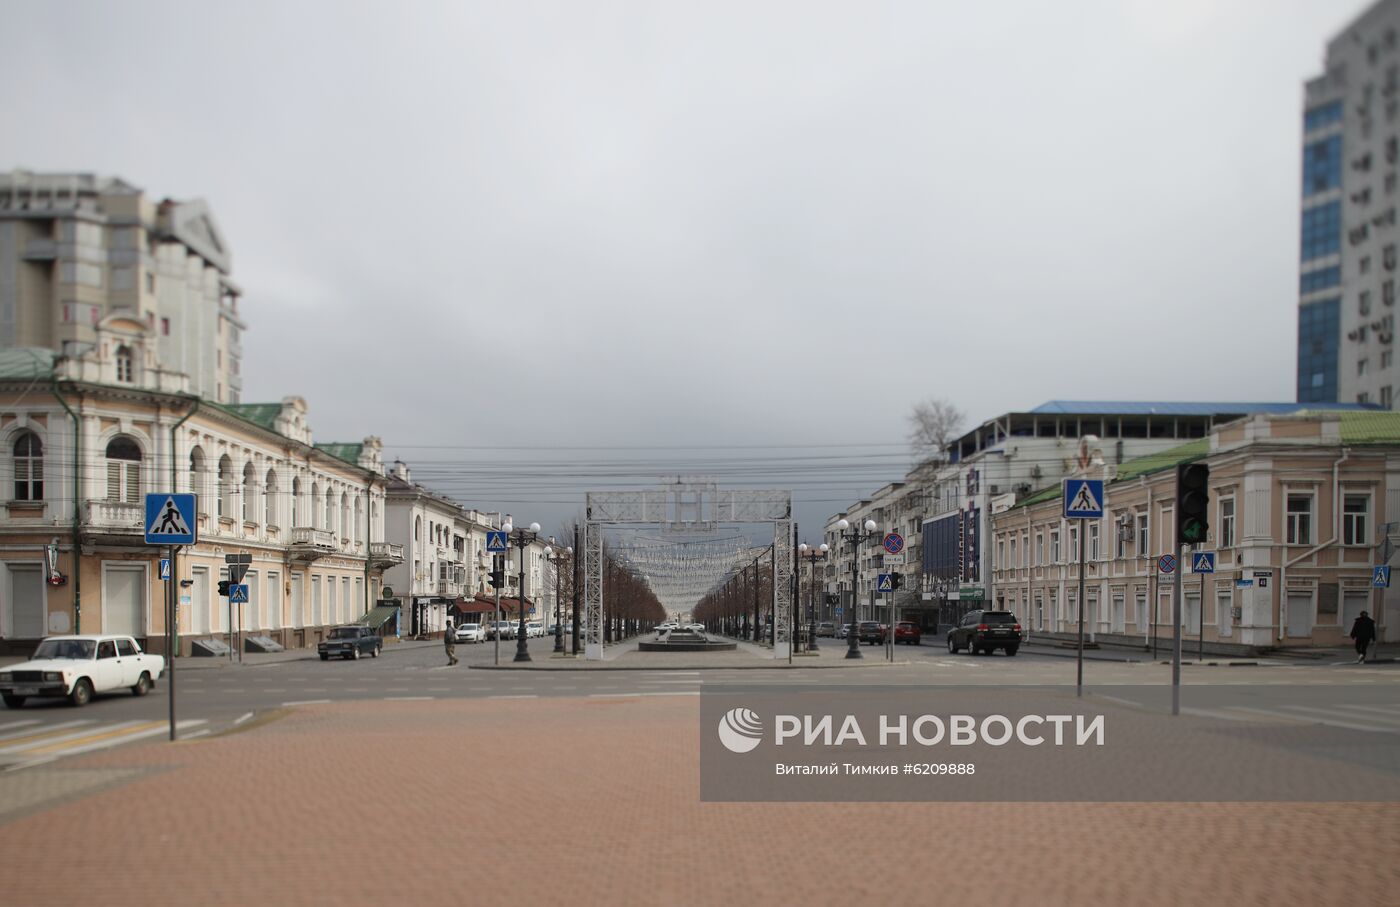 Ситуация в городах России в связи с коронавирусом